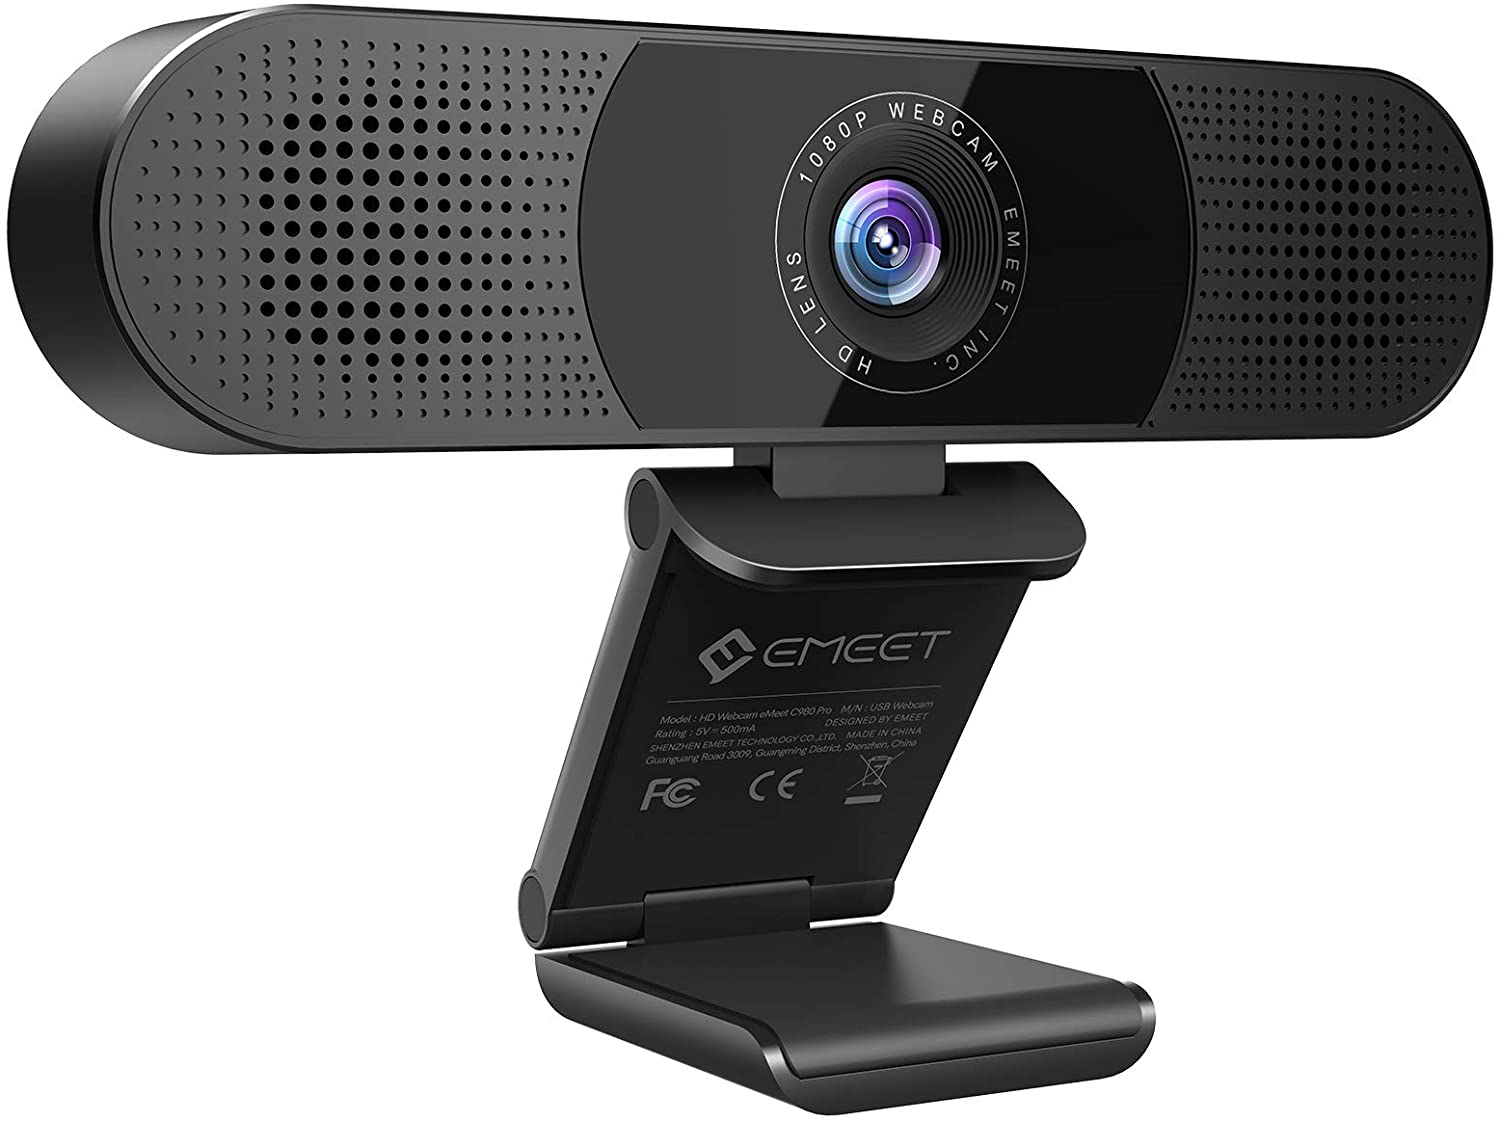 Cámara web 3 en 1 - eMeet C980 Pro Webcam con micrófono, 2 altavoces y 4 matrices de micrófonos omnidireccionales integradas, cámara web 1080P